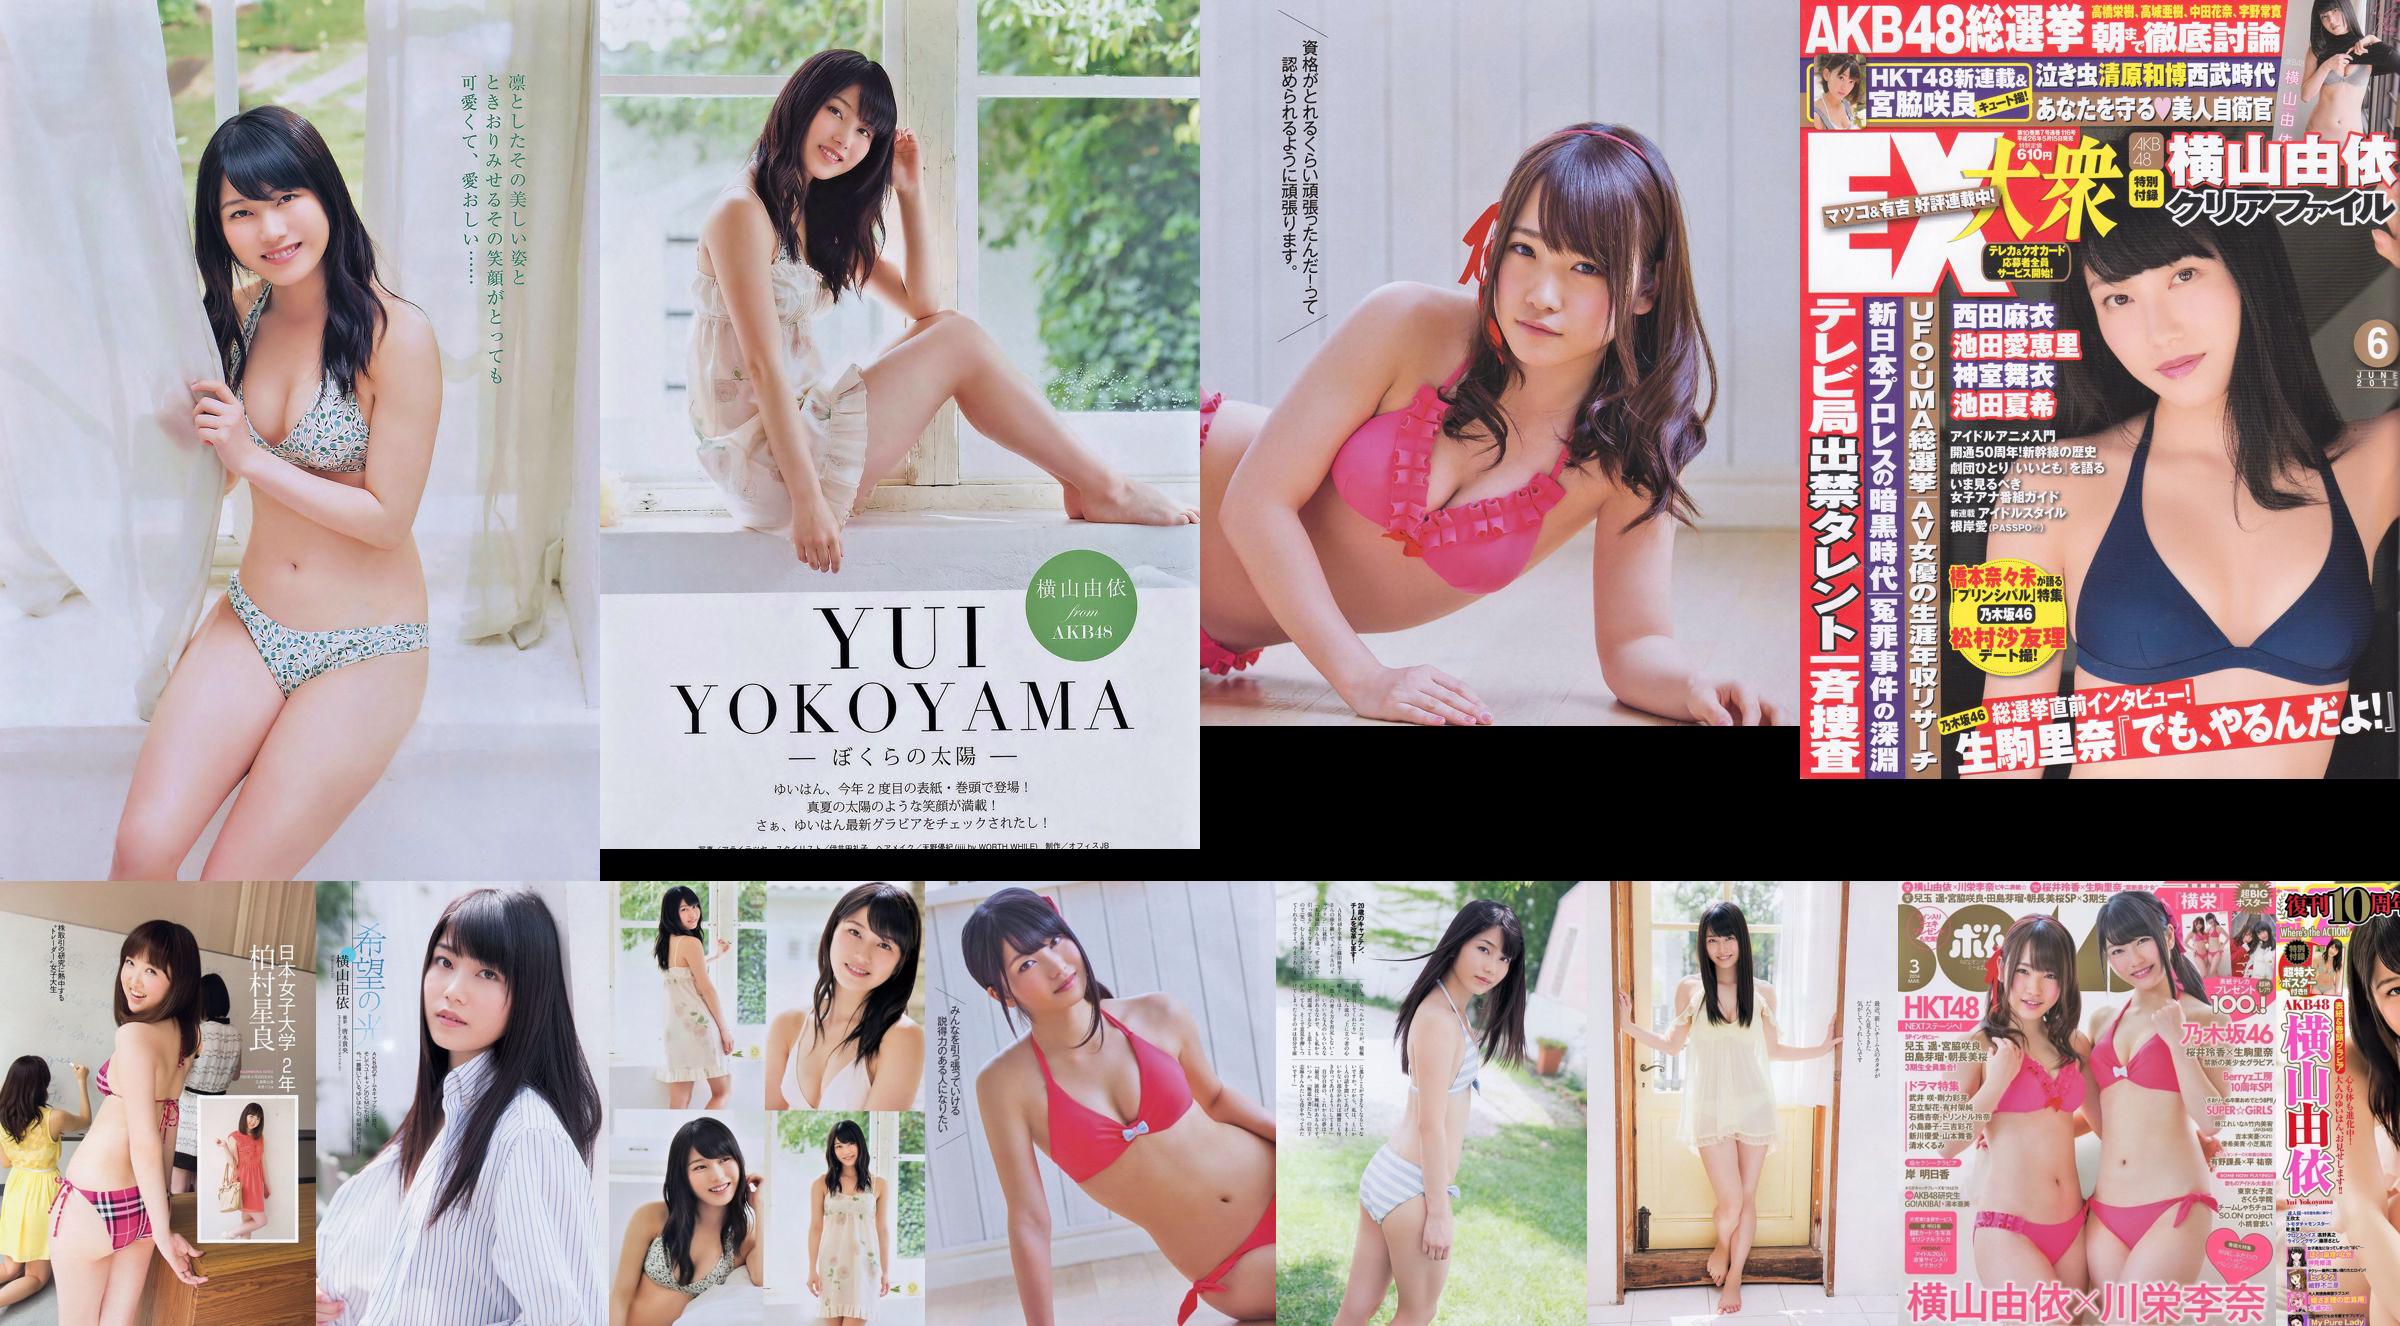 Yui Yokoyama Nozomi Sasaki Rina Koike Asuka Kuramochi Miwako Kakei Risa Yoshiki Ruri Shinato [Weekly Playboy] 2013 No.38 Photograph No.290855 Page 12